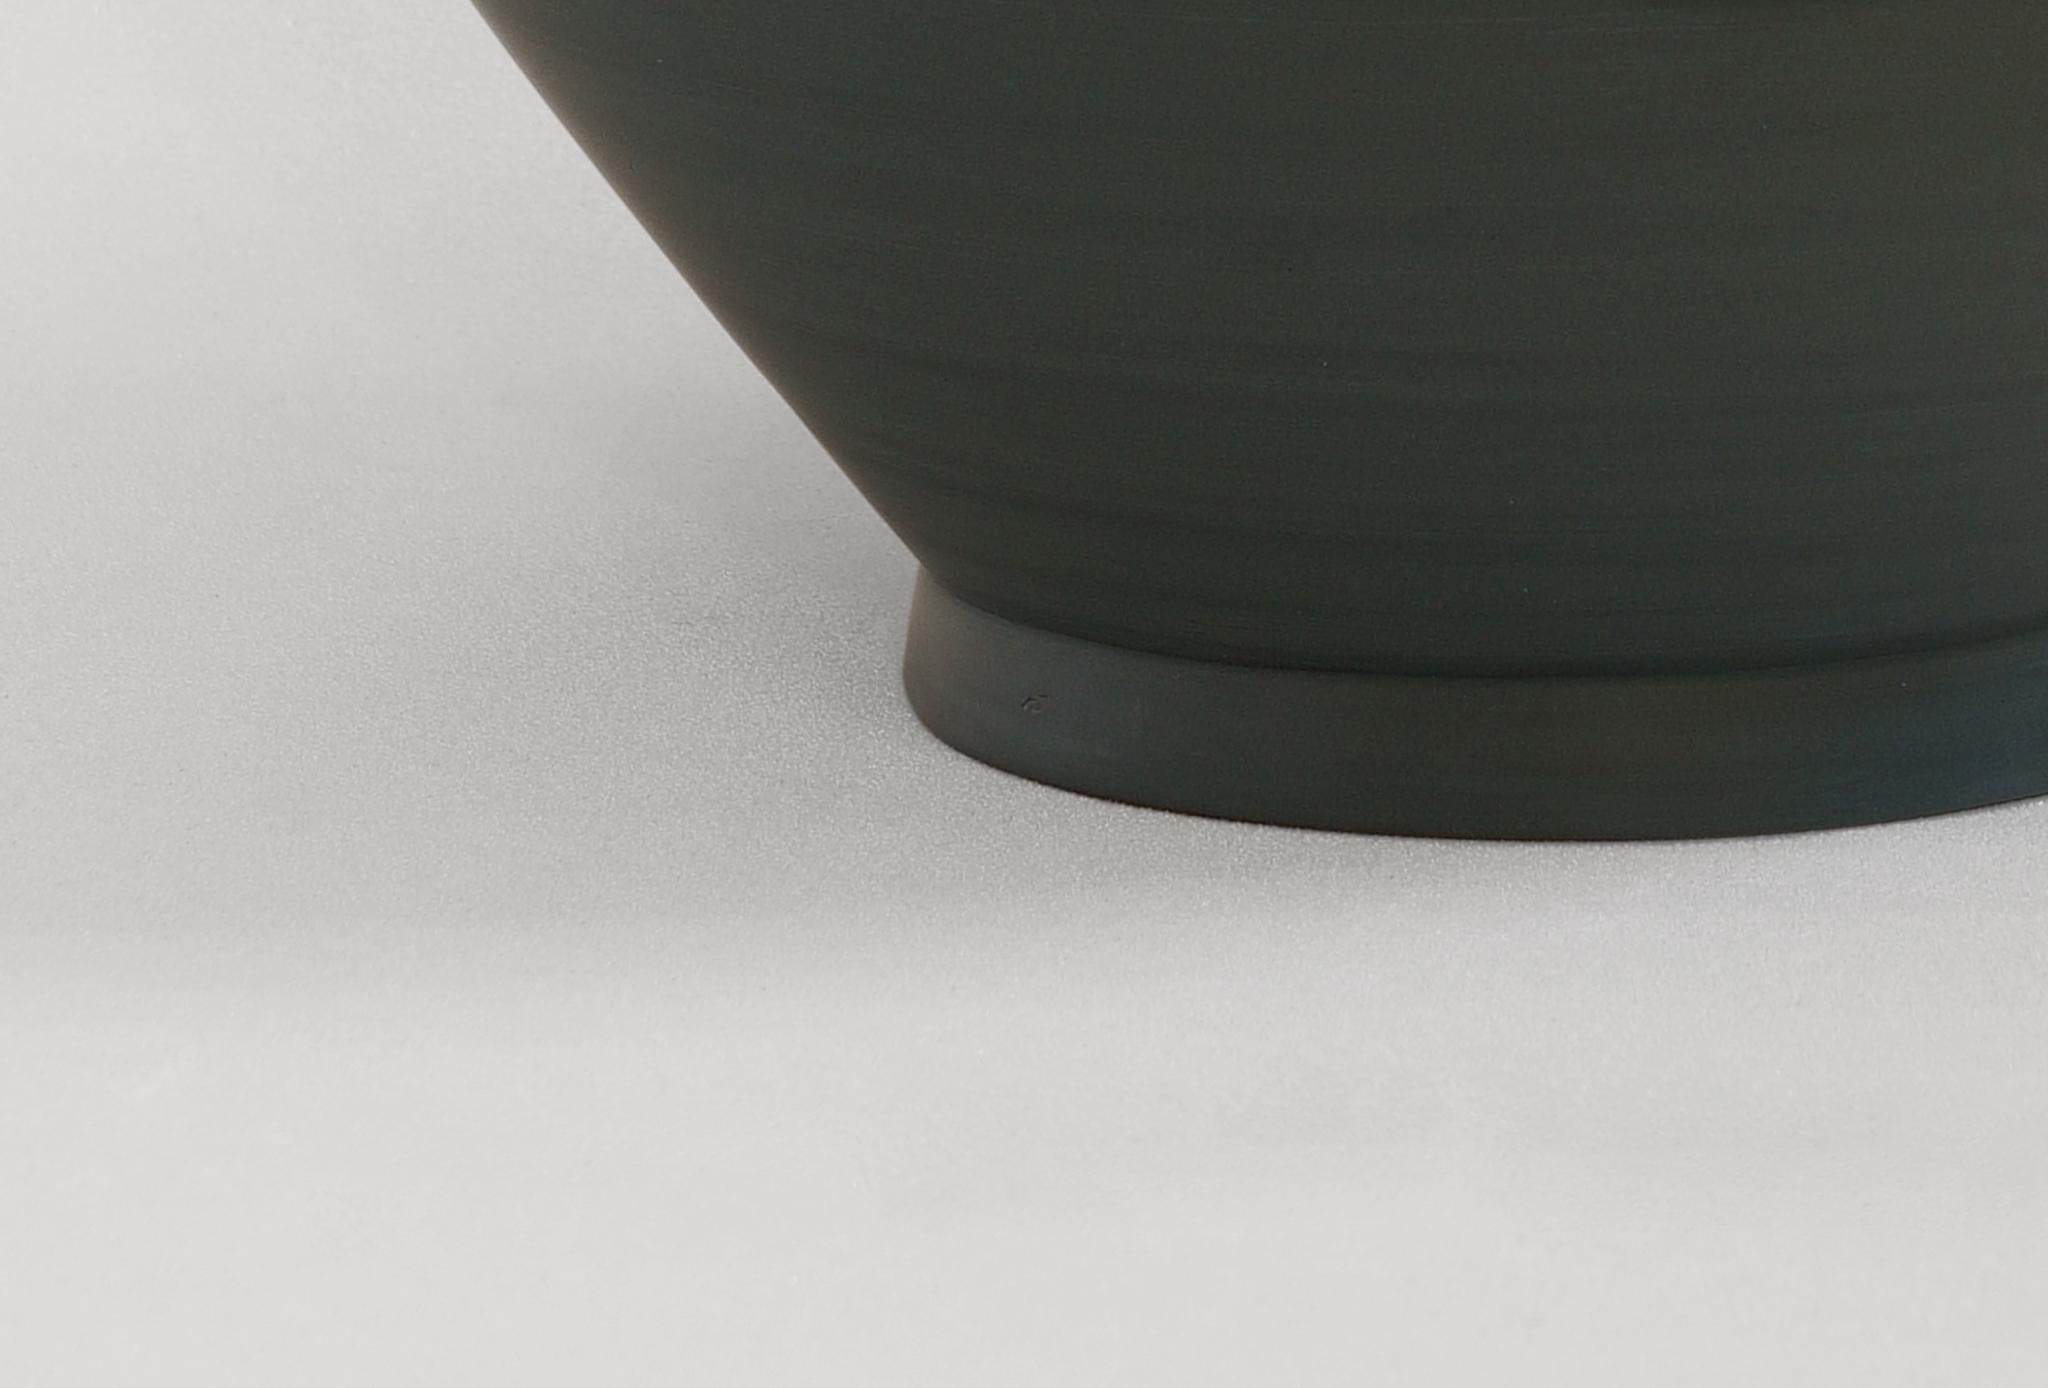 Other Half Half Vase by Jung Hong